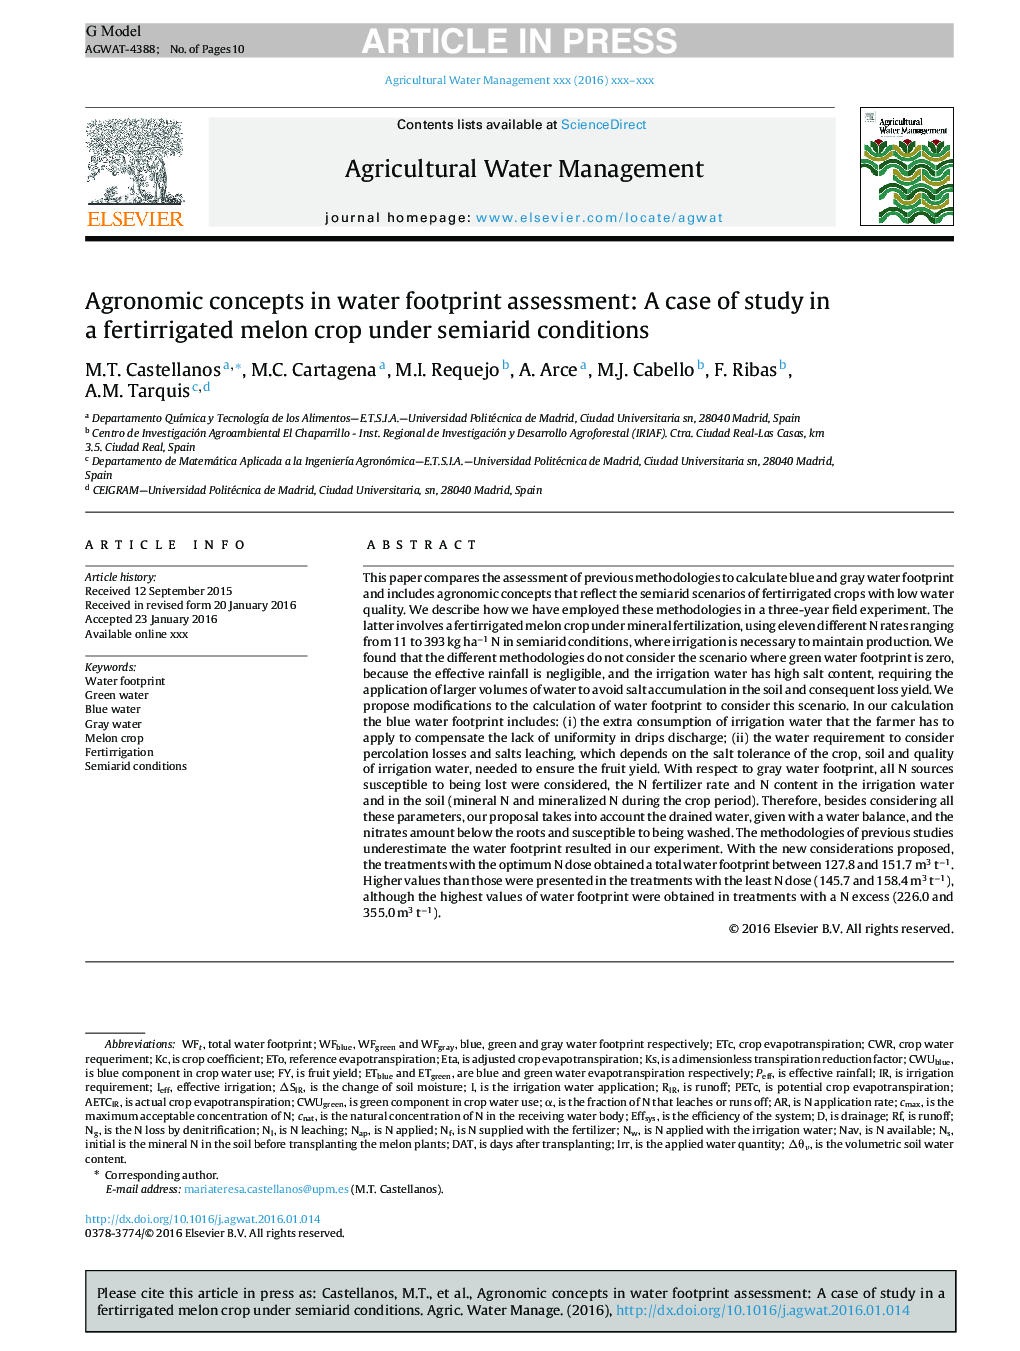 مفاهیم زراعی در ارزیابی رد پای آب: مورد مطالعاتی در یک محصول خربزه مزرعه ای تحت شرایط نیمه خشک 